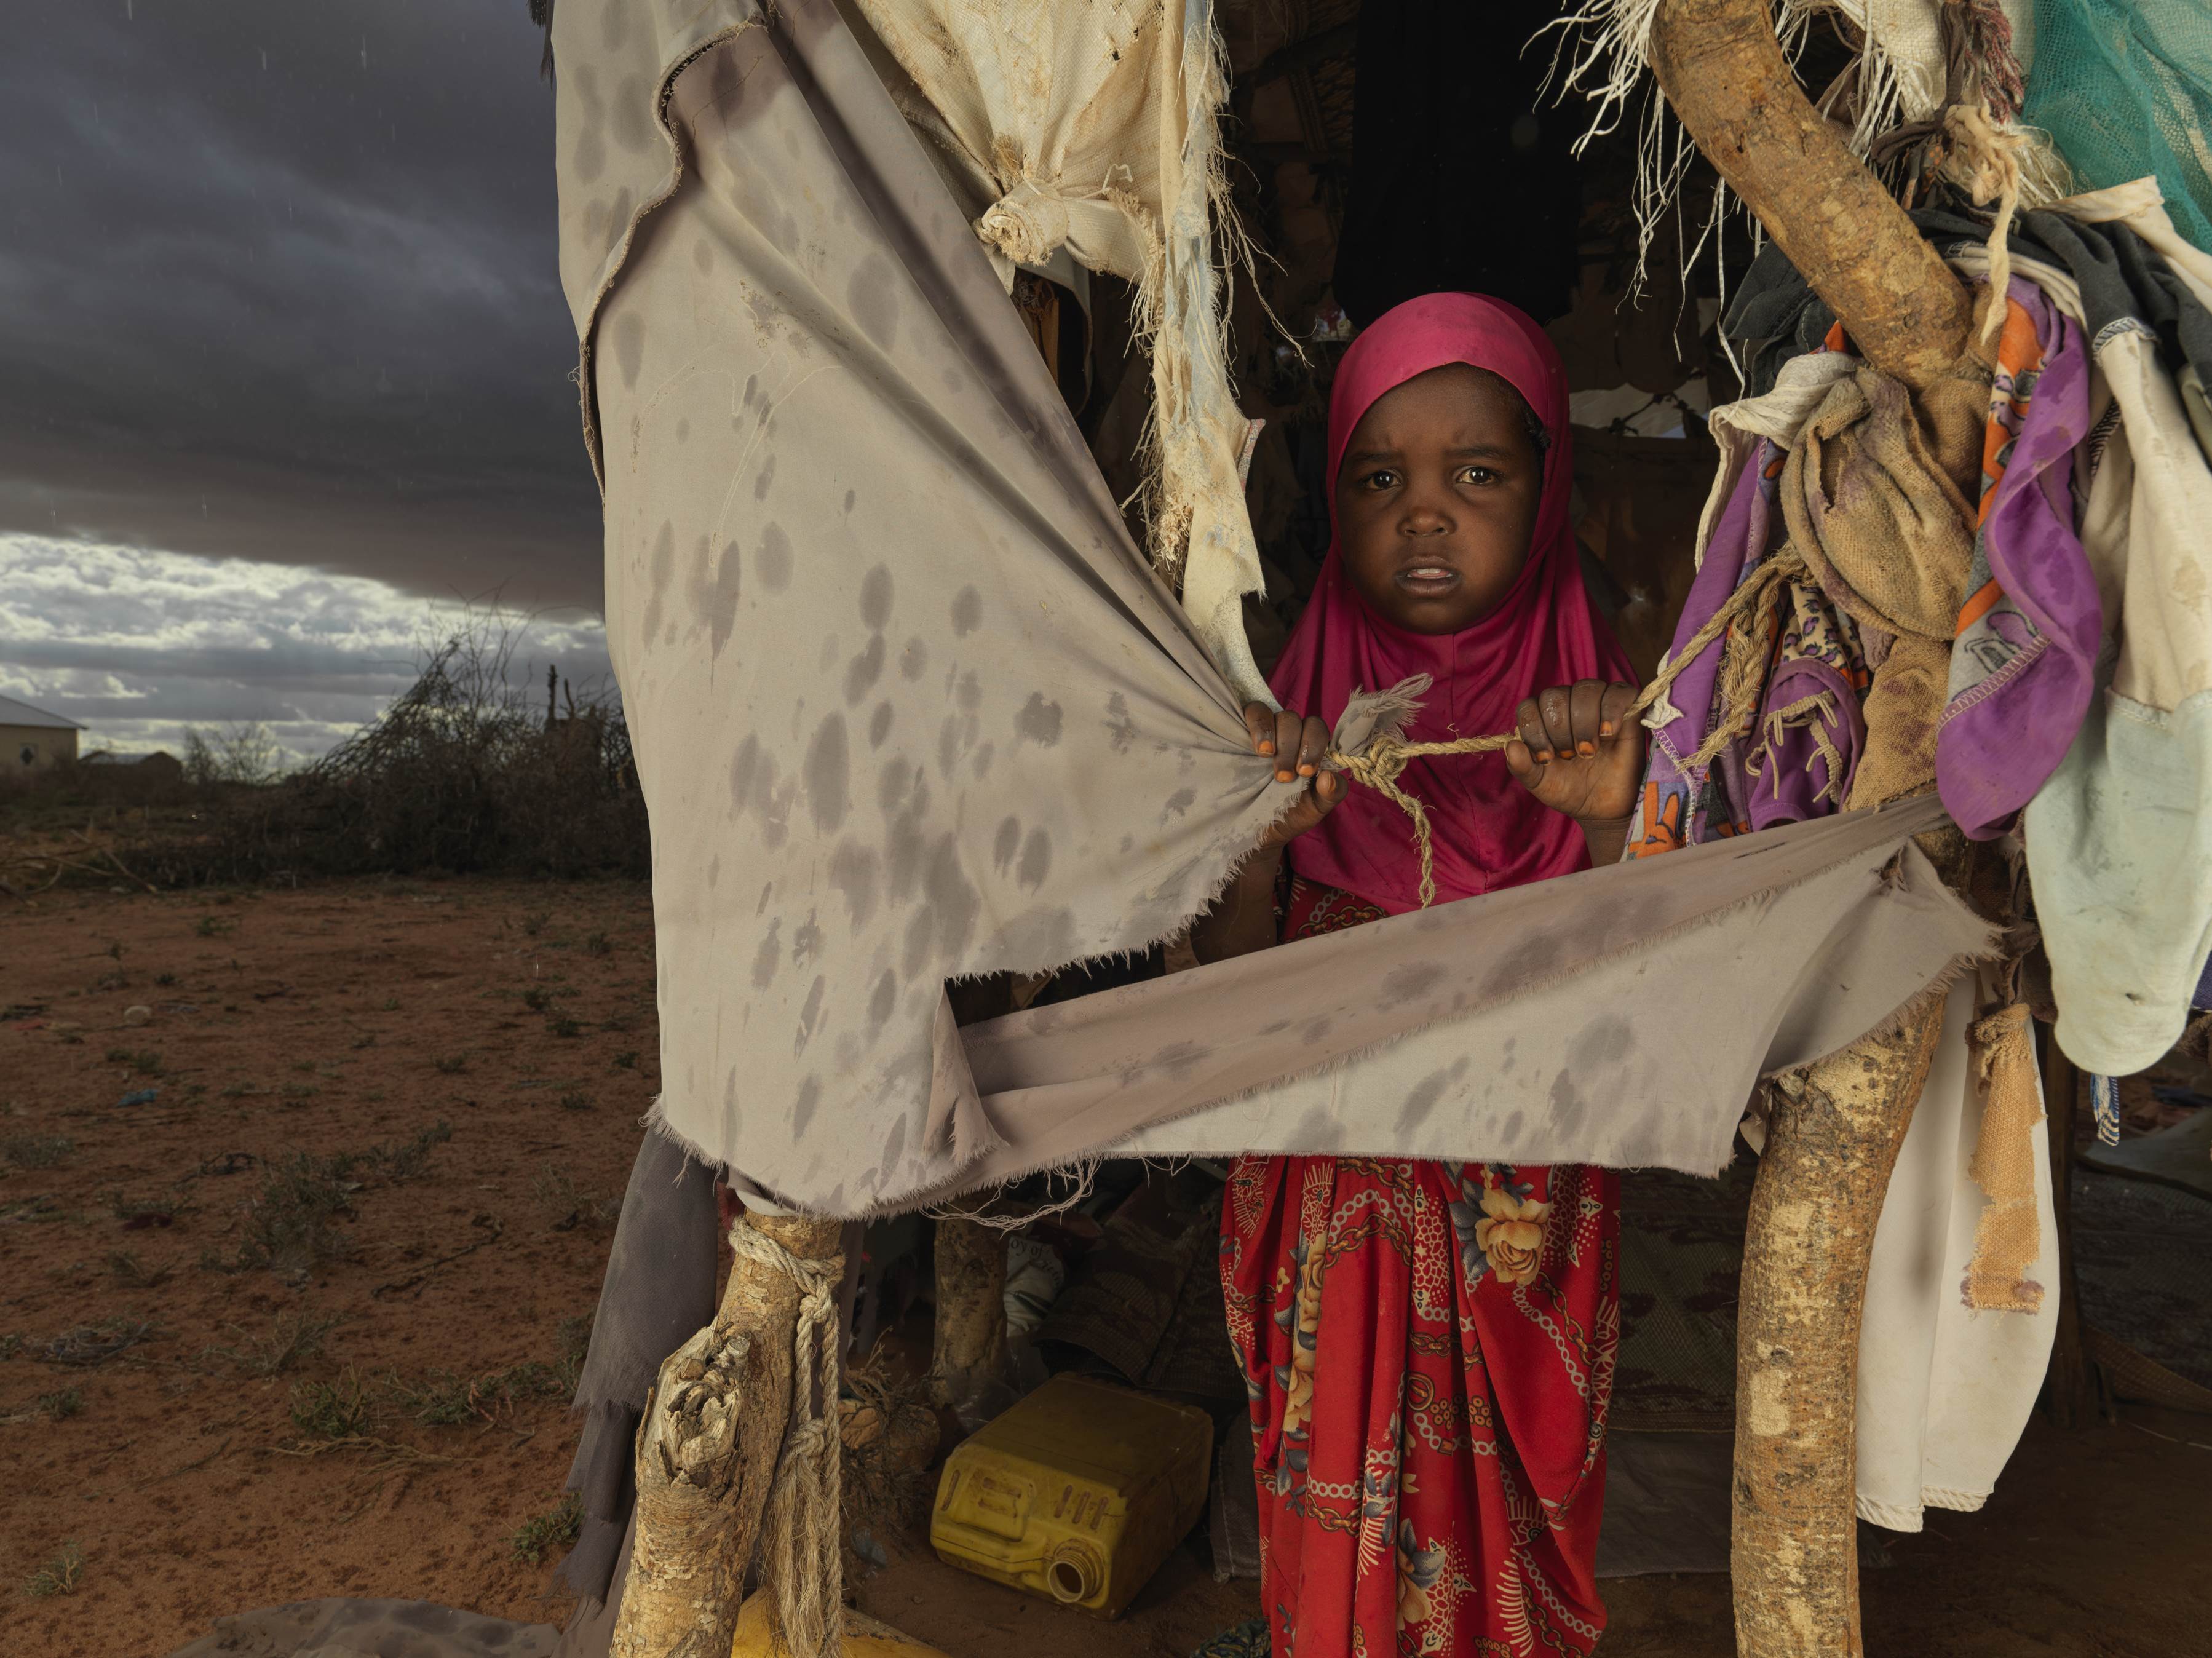 Niña de Somalilandia mirando desde el refugio improvisado donde vive